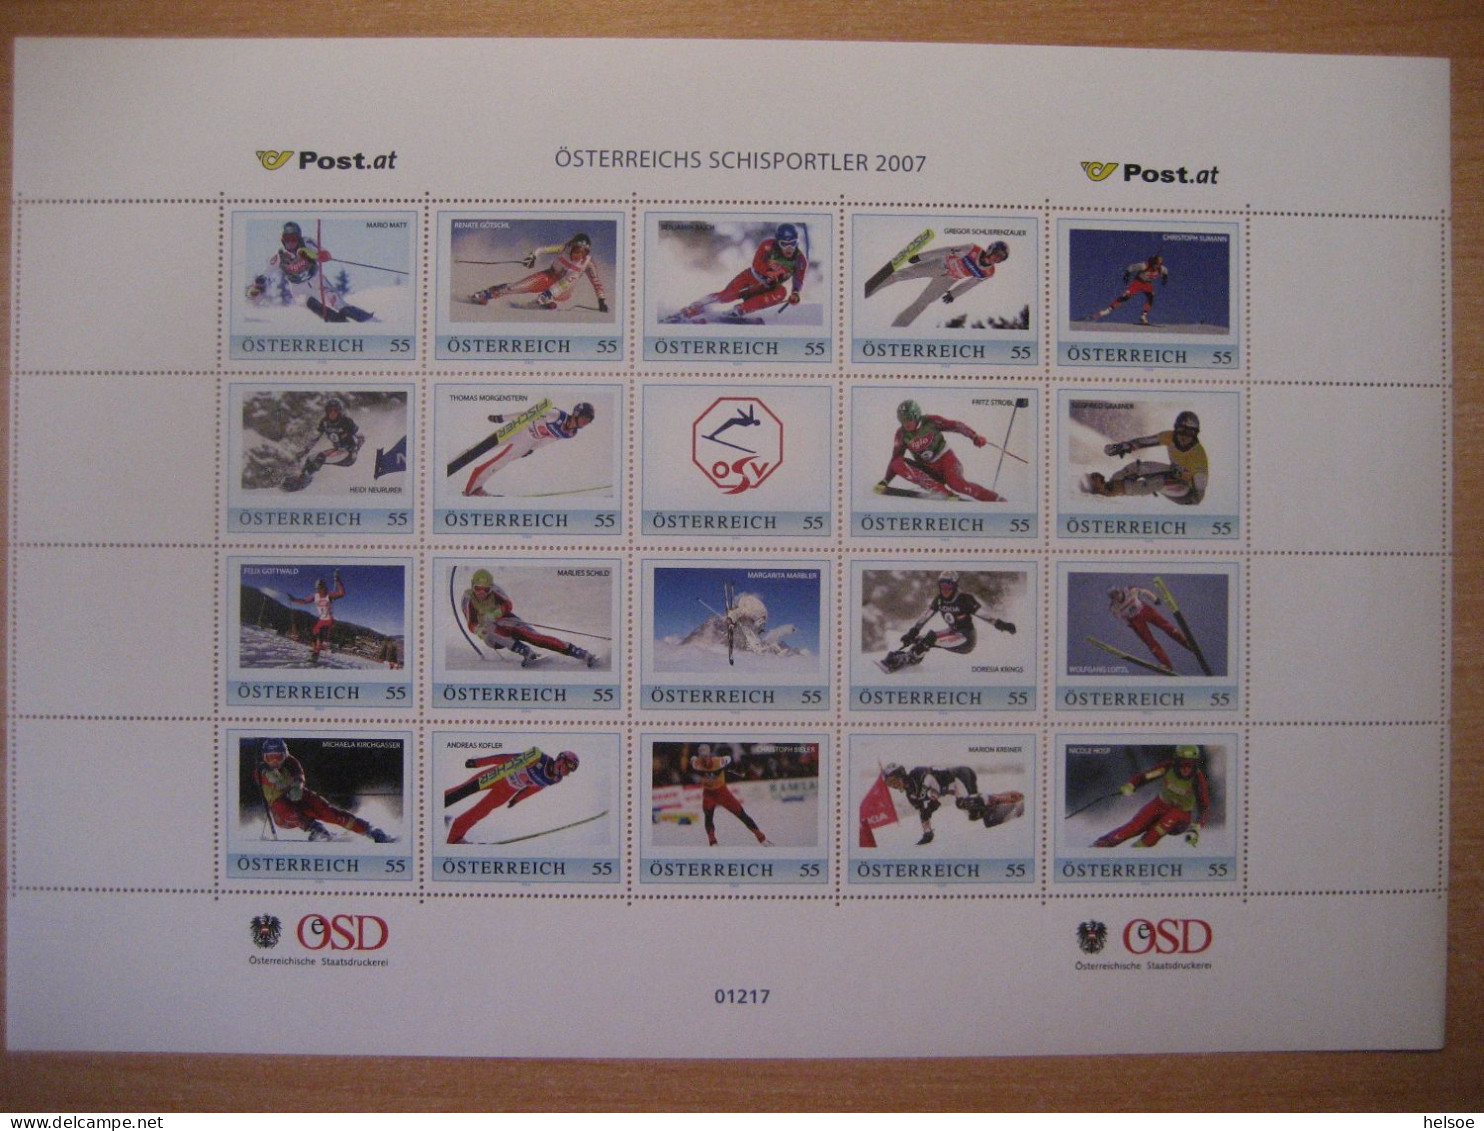 Österreich- PM Österreichs Schisportler 2007, Ganzer Bogen Nr. 01217 ** Ungebraucht - Persoonlijke Postzegels